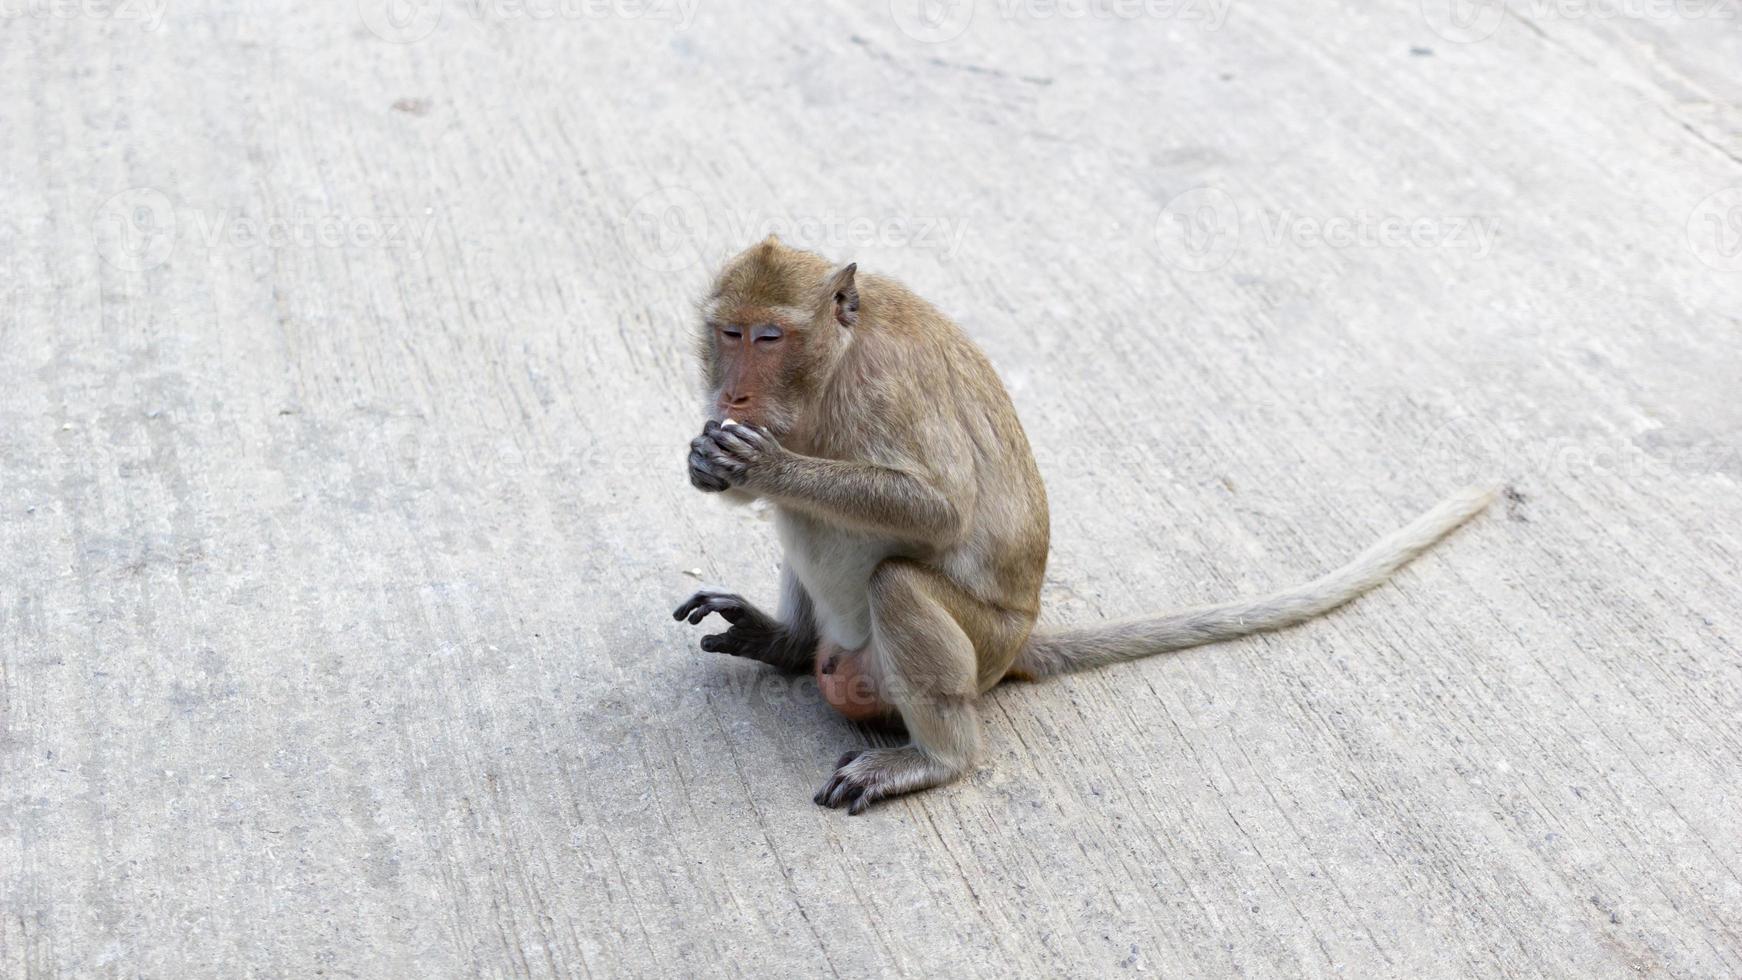 un mono marrón se sentó en un poste de cemento, comió un plátano y miró hacia la izquierda. foto